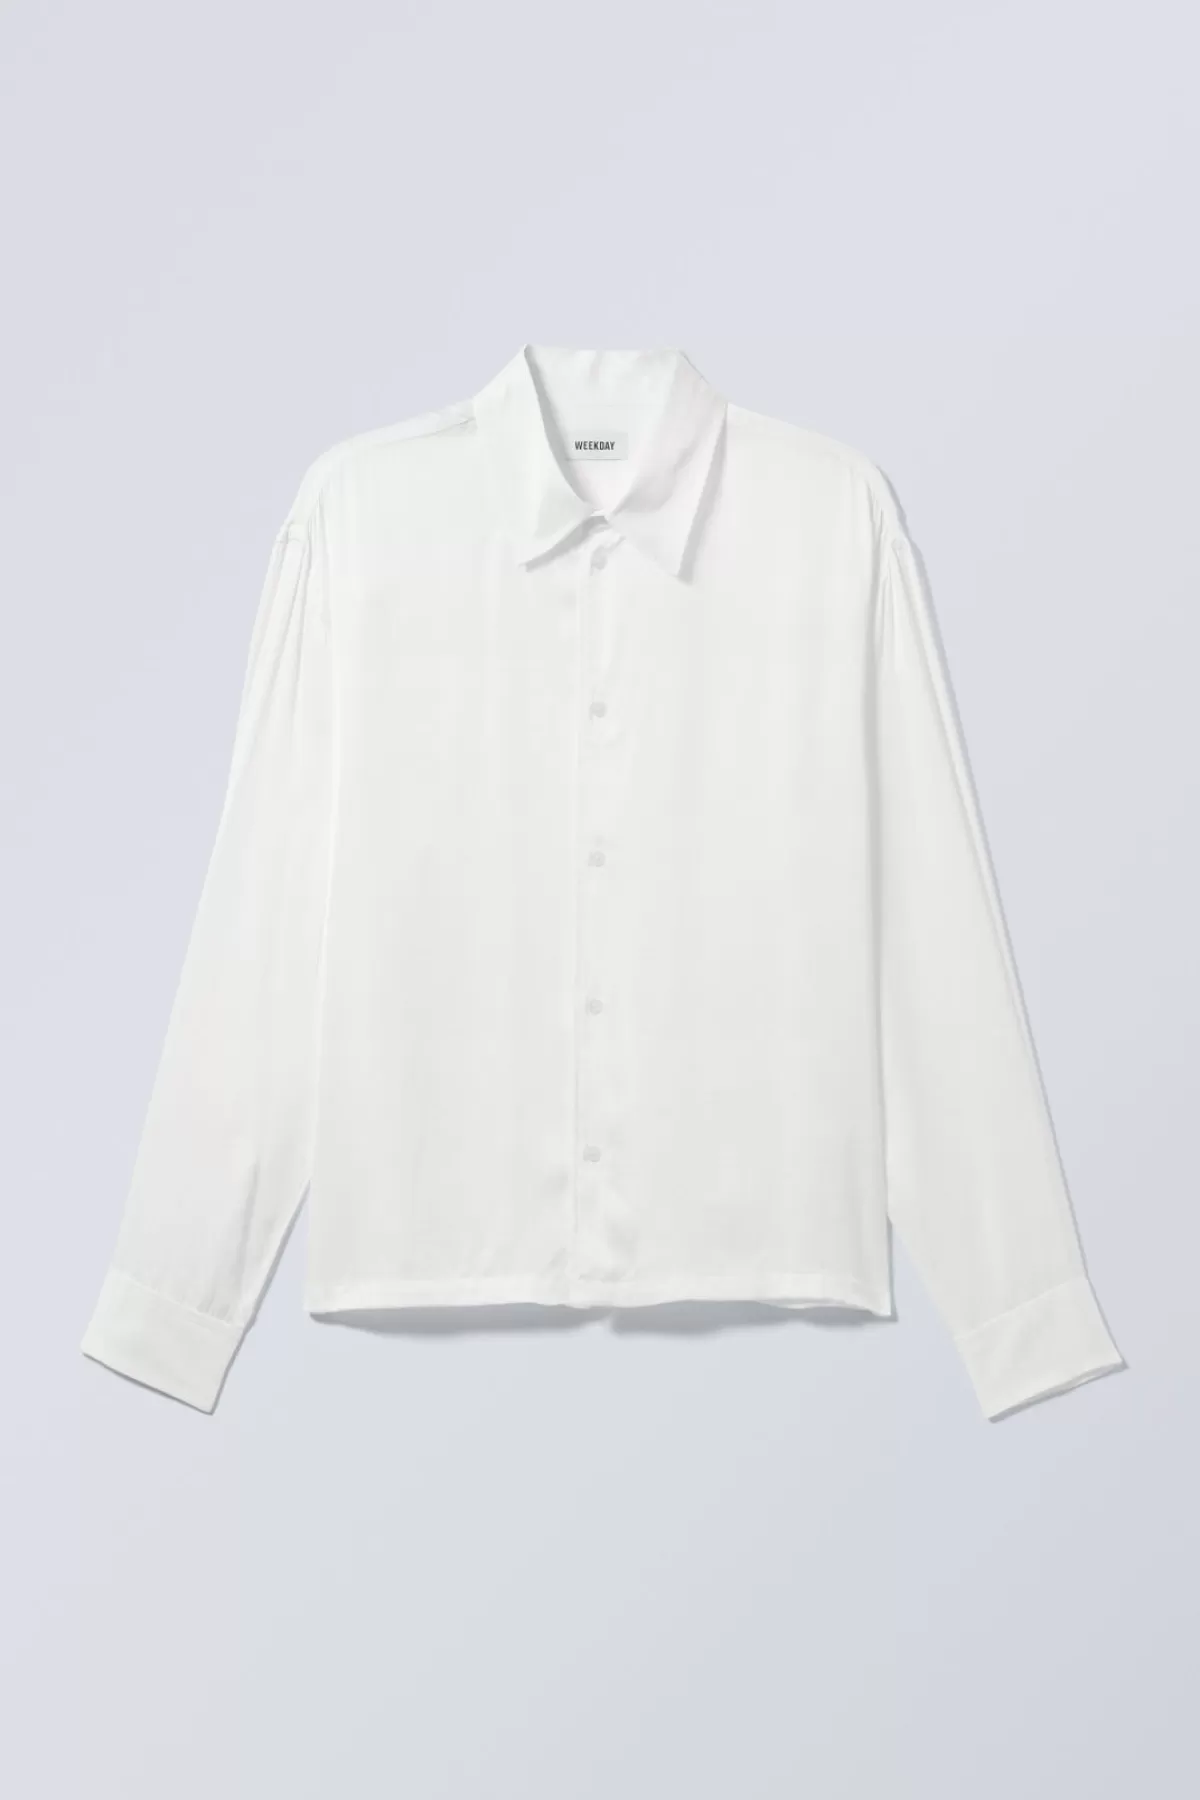 Weekday Oversized Boxy Shiny Shirt White Sale